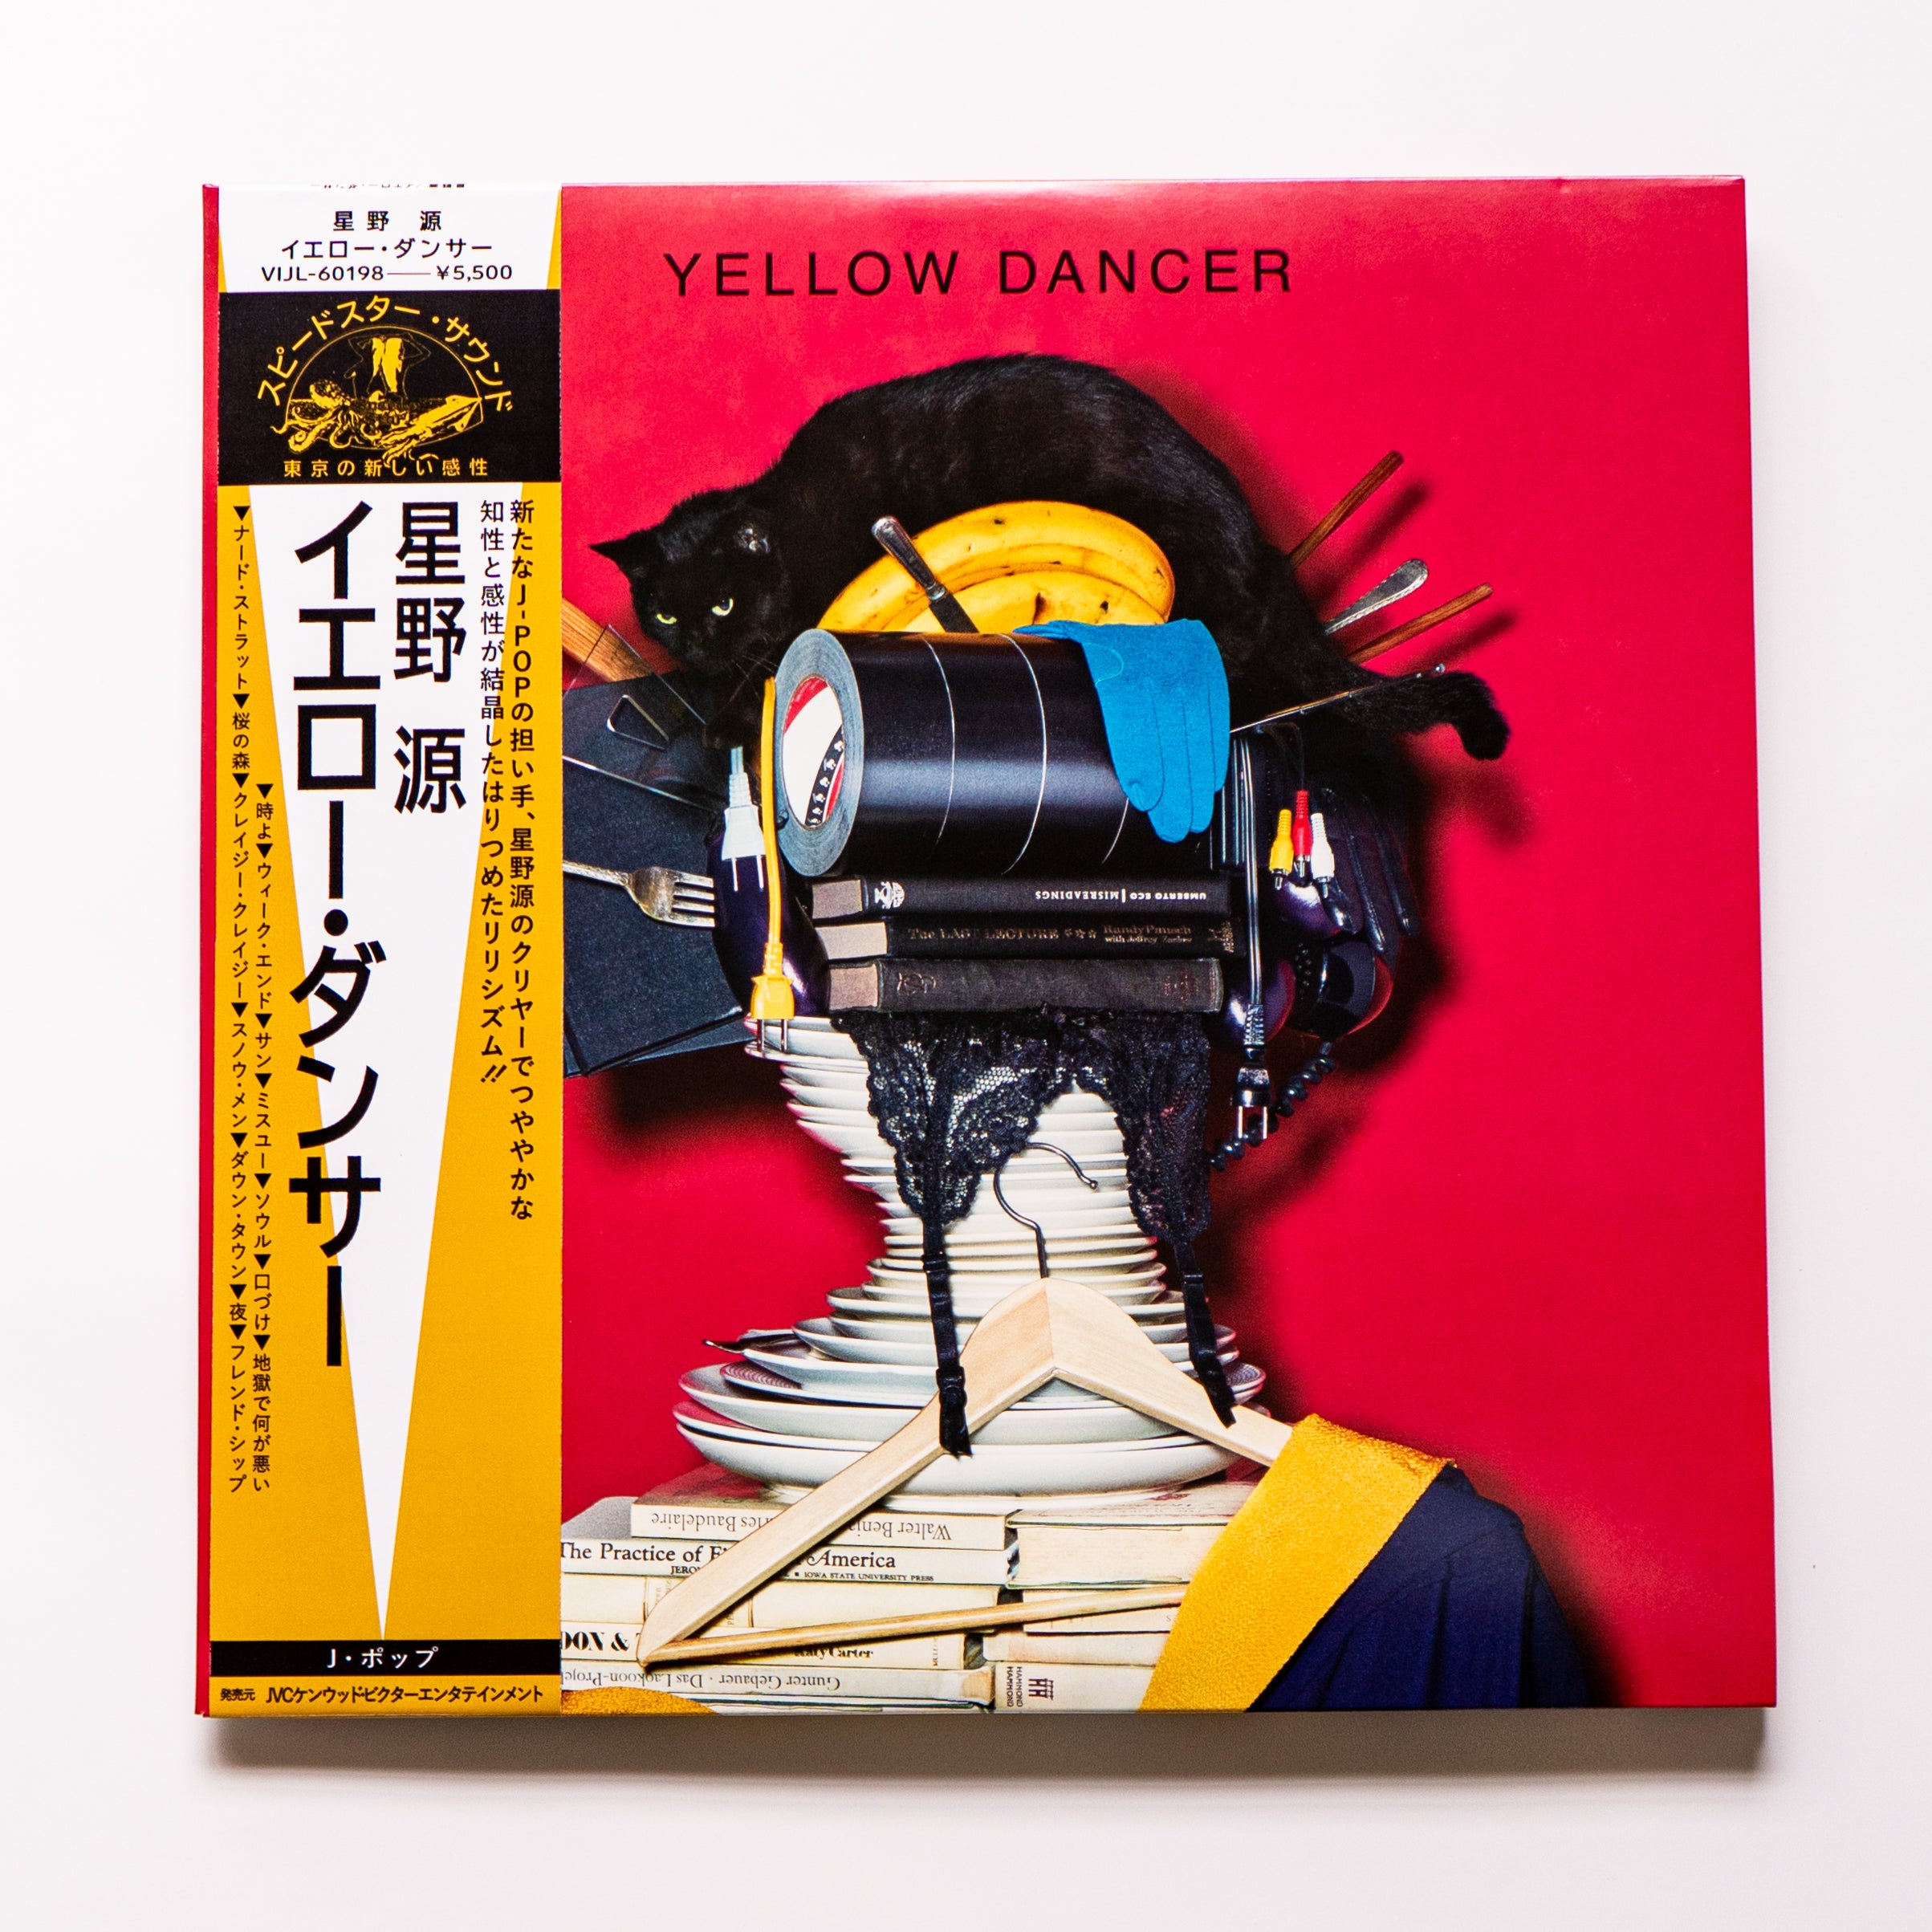 星野源 4thアルバム『YELLOW DANCER』LPレコード